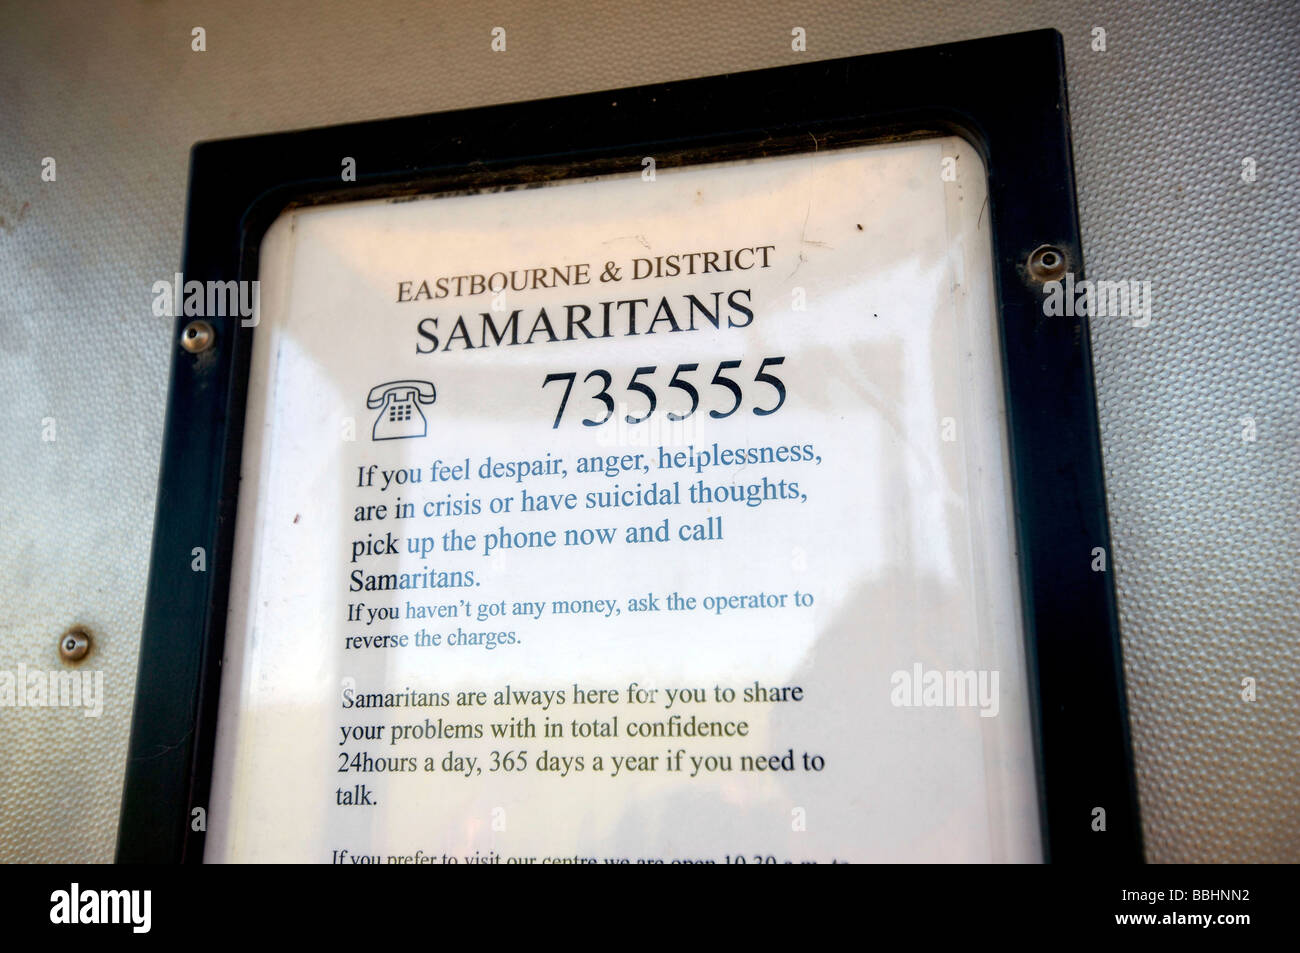 Dettagli di contatto per i Samaritani intorno e nel telefono pubblico box a Beachy Head, un famoso spot di suicidio. Foto Stock